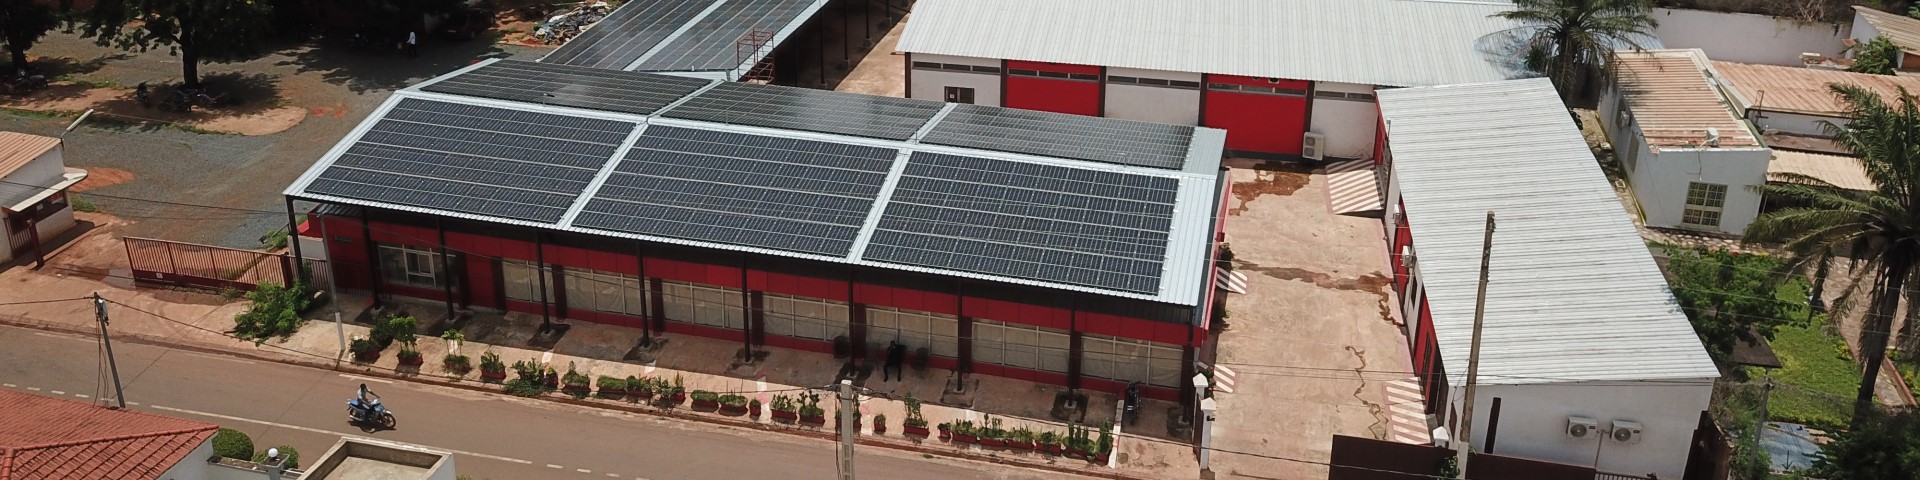 Photovoltaik-Anlage auf dem Dach eines Industriegebäudes in Mali. Copyright: GIZ / Ismaël Diallo